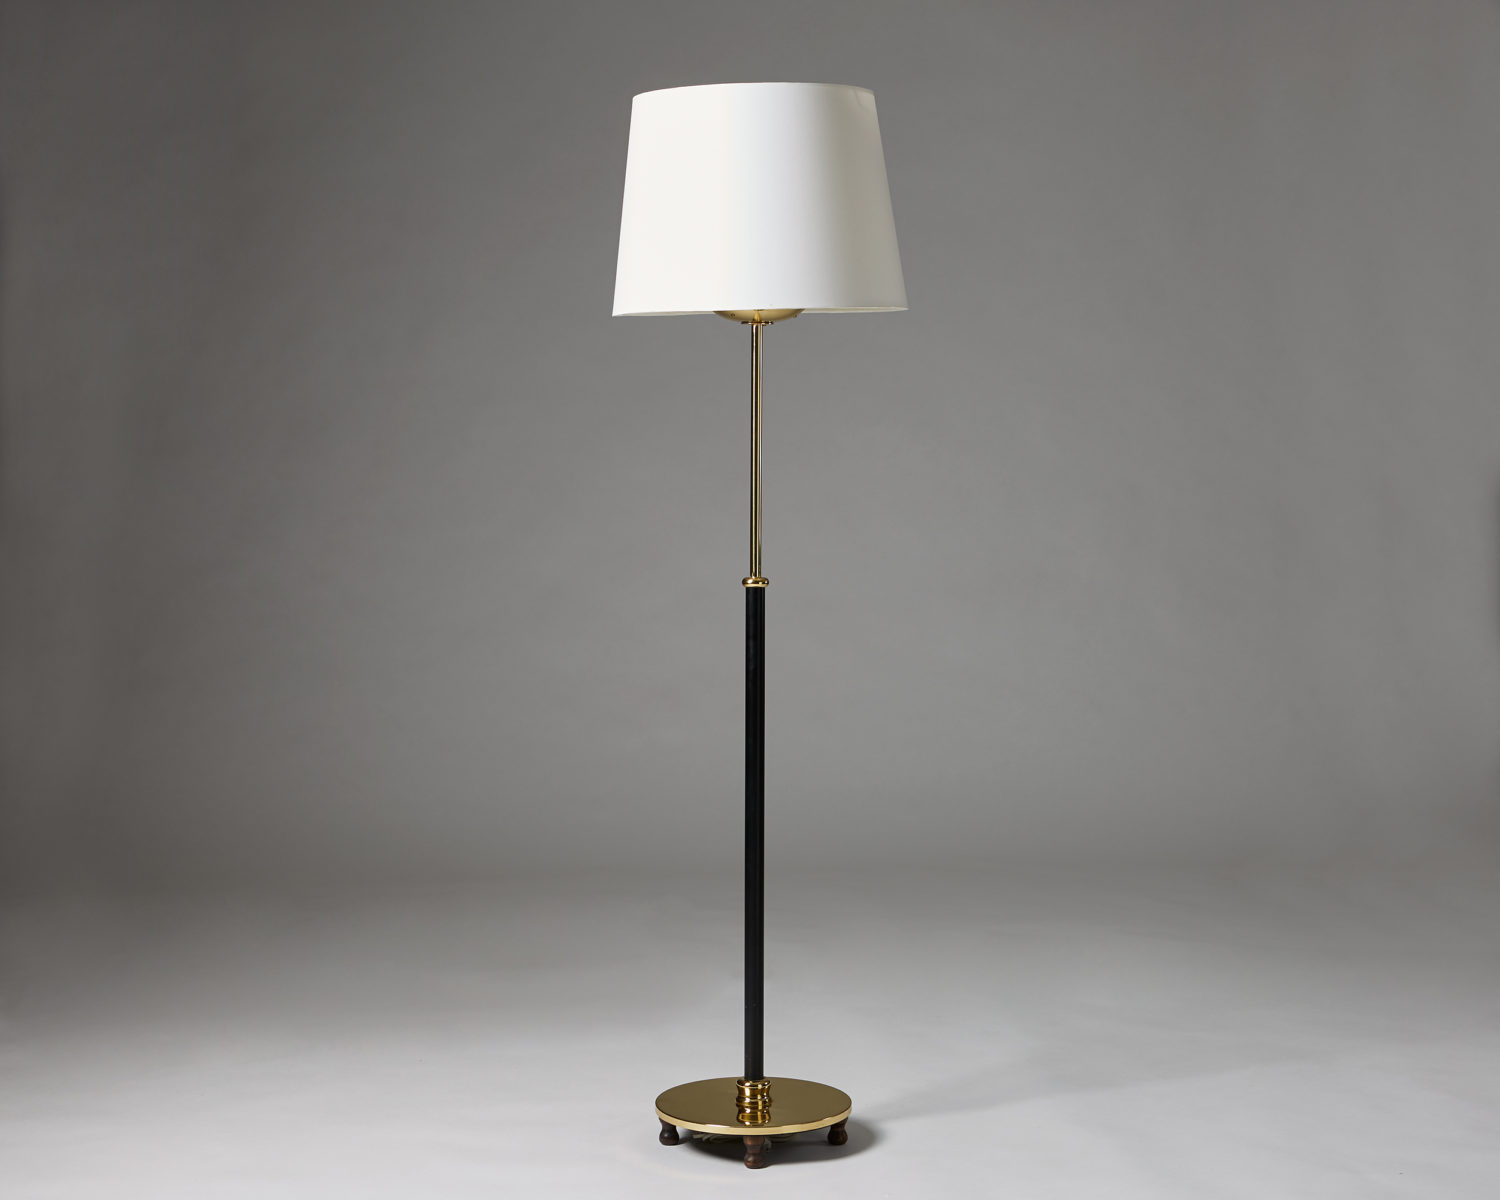 Floor Lamp Designed Josef Frank For Svenskt Tenn Modernity within size 1500 X 1200